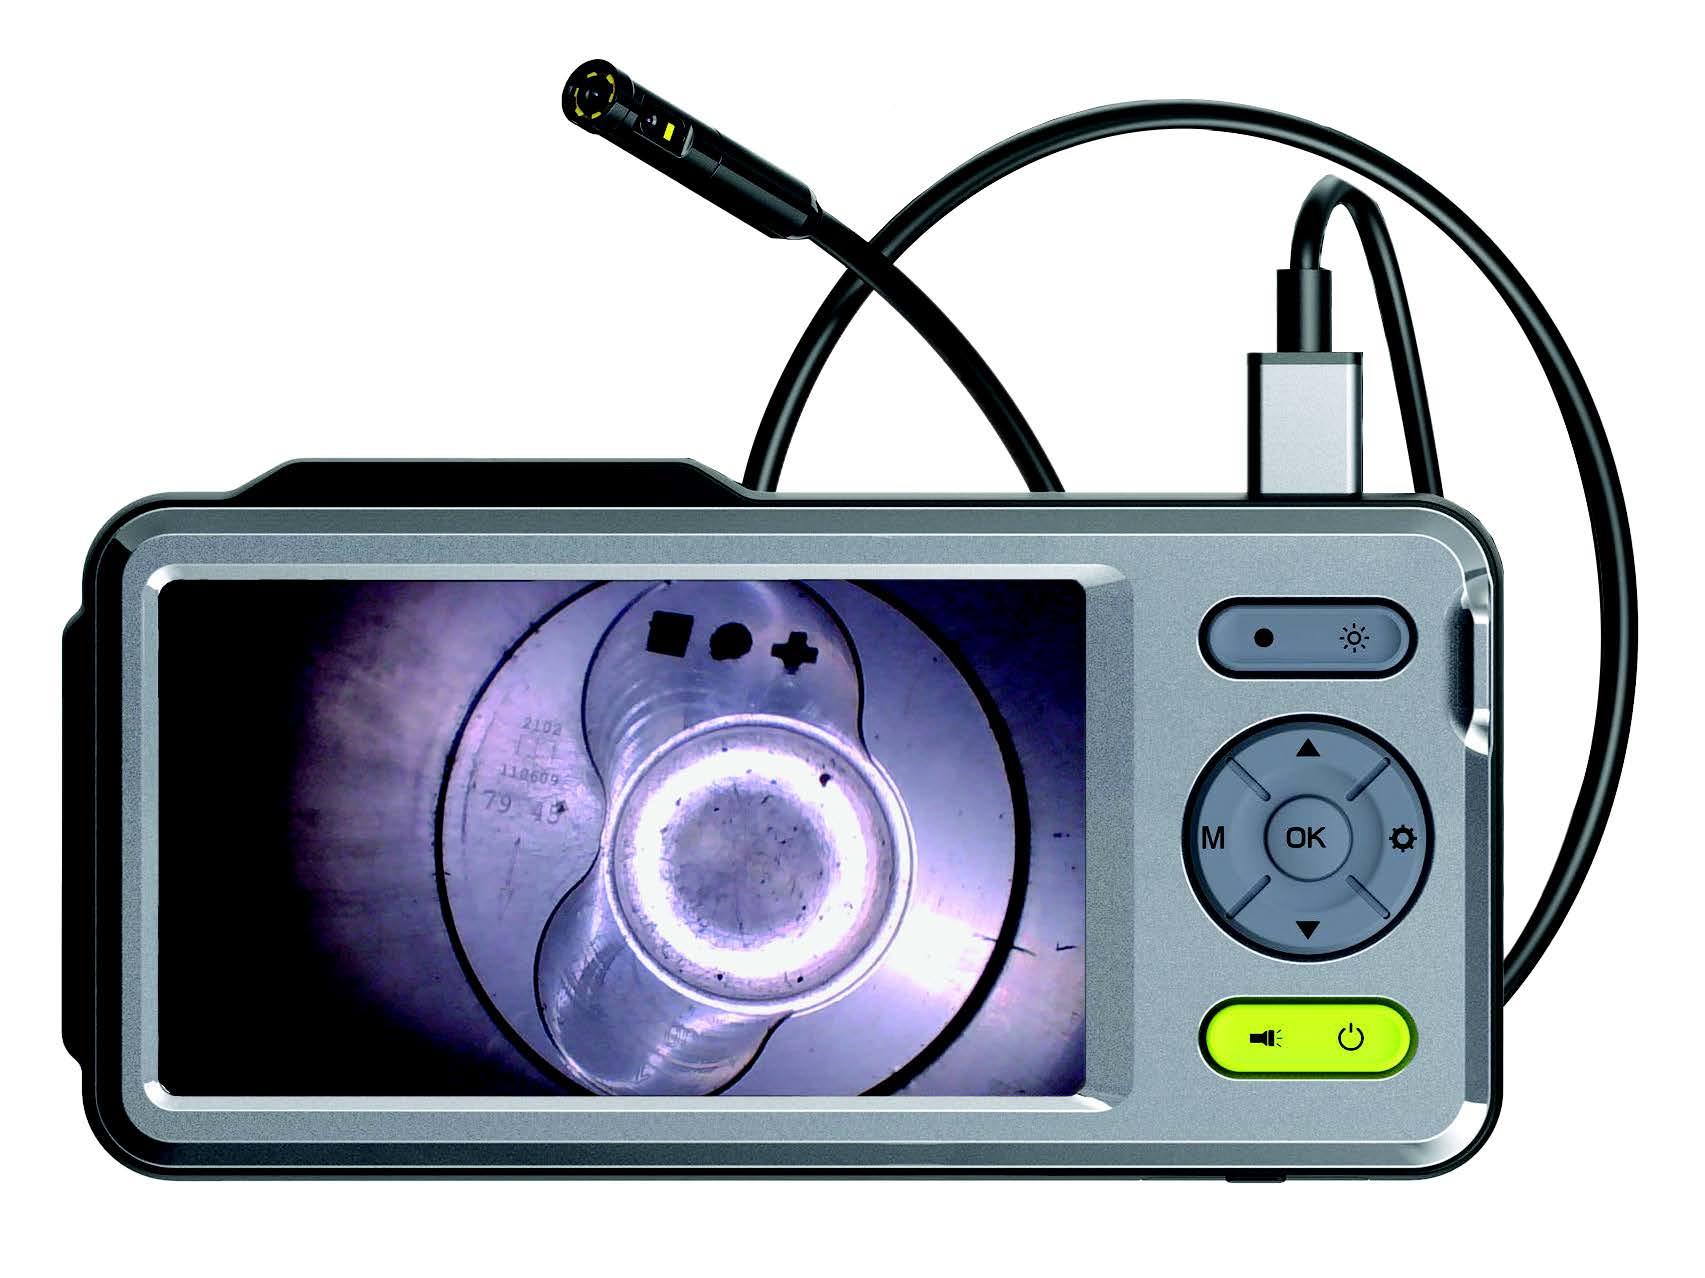 GMTO 1-channel Automotive Scope Oscilloscope